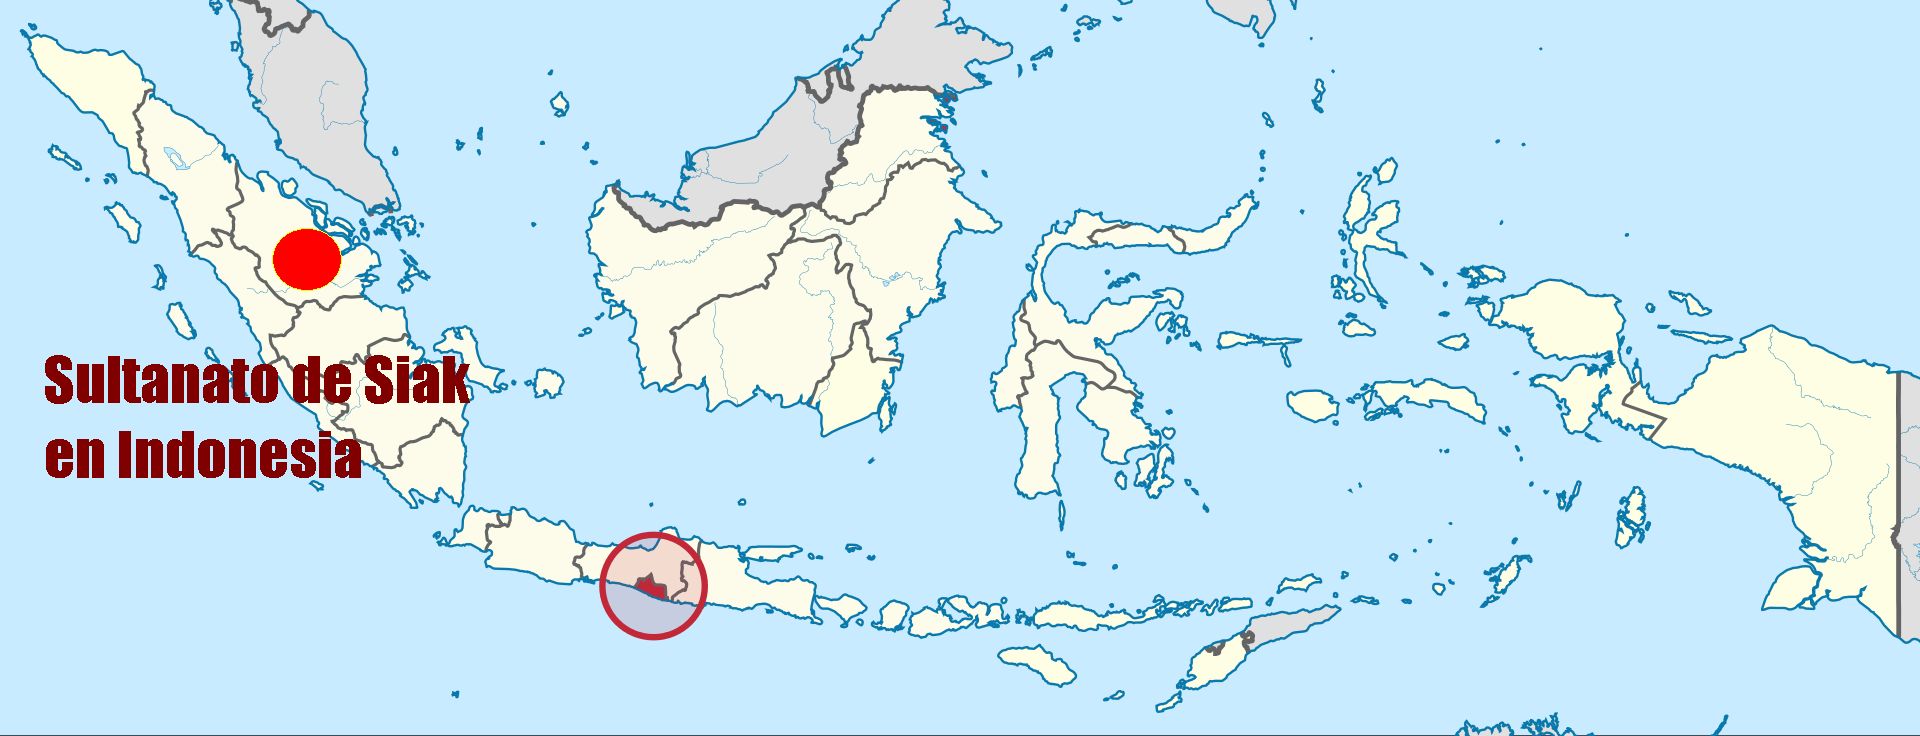 El sultanato de Siak en Indonesia